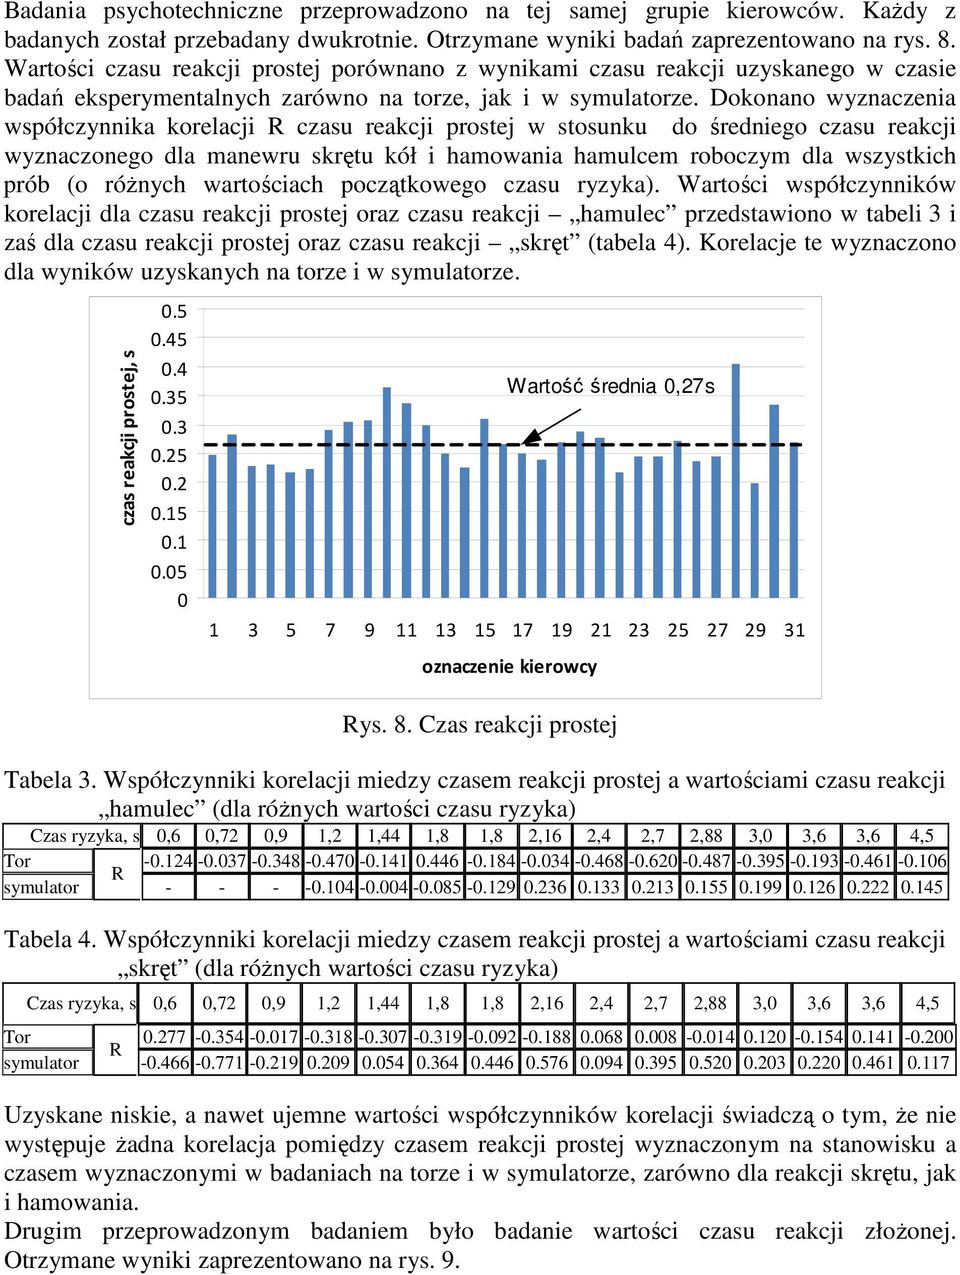 Dokonano wyznaczenia współczynnika korelacji R czasu reakcji prostej w stosunku do średniego czasu reakcji wyznaczonego dla manewru skrętu kół i hamowania hamulcem roboczym dla wszystkich prób (o